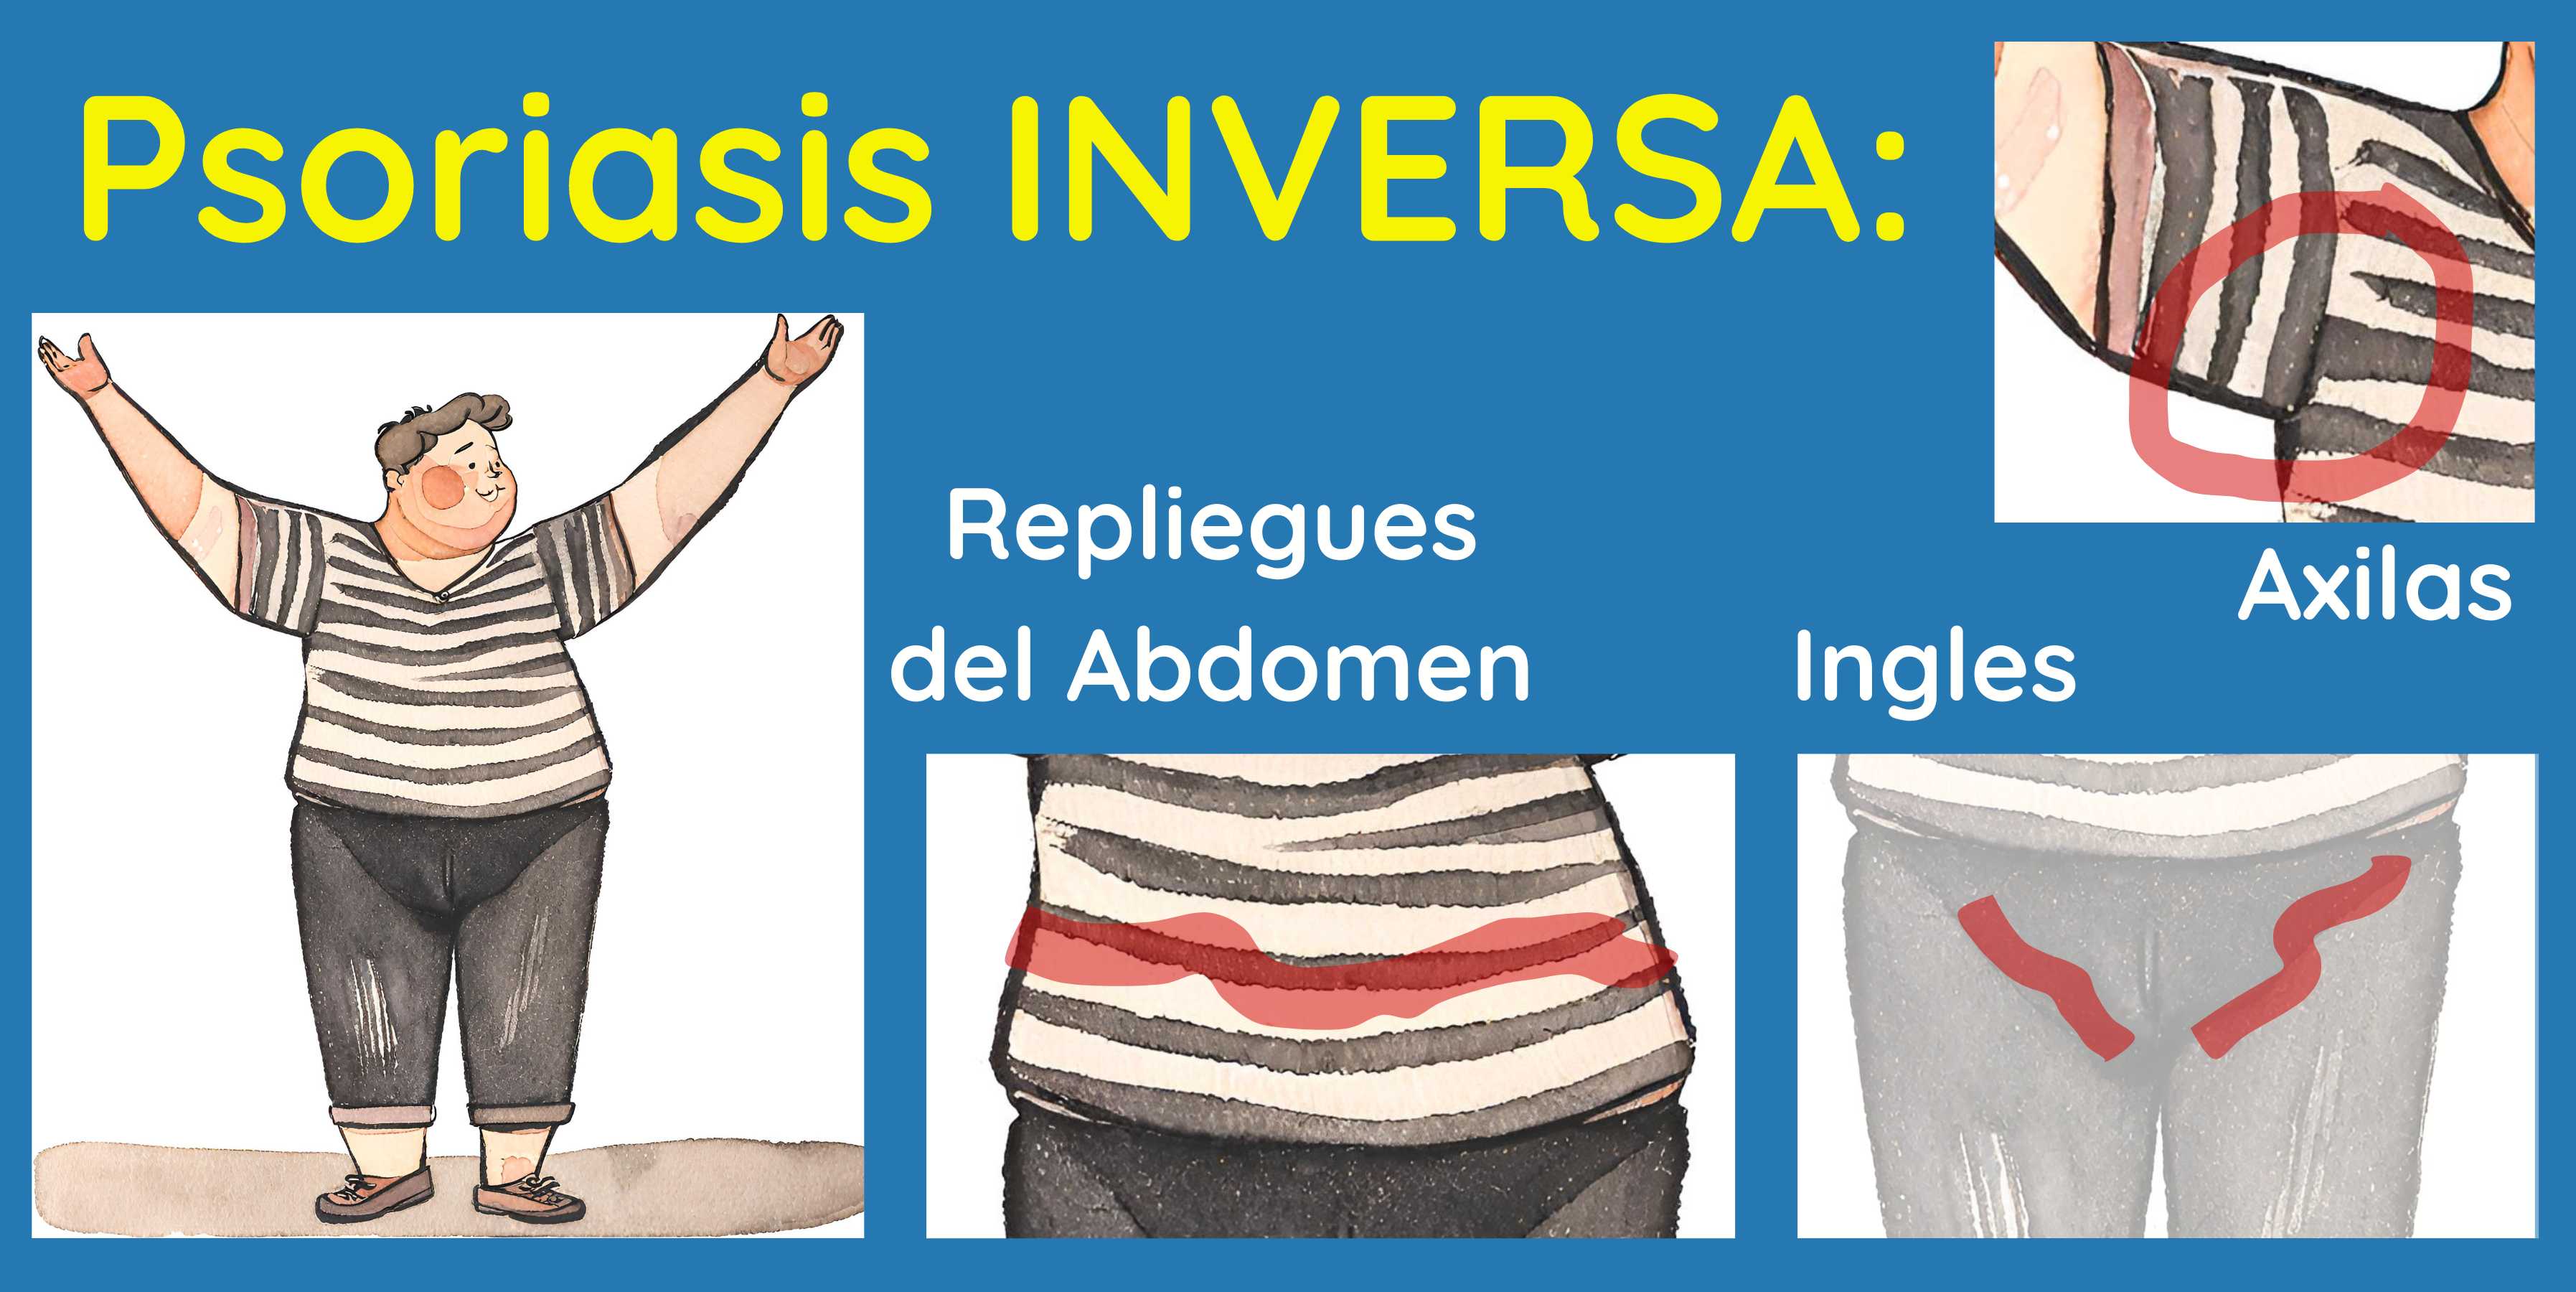 Psoriasis inversa en casos de obesidad también puede afectar en los pliegues abdominales.